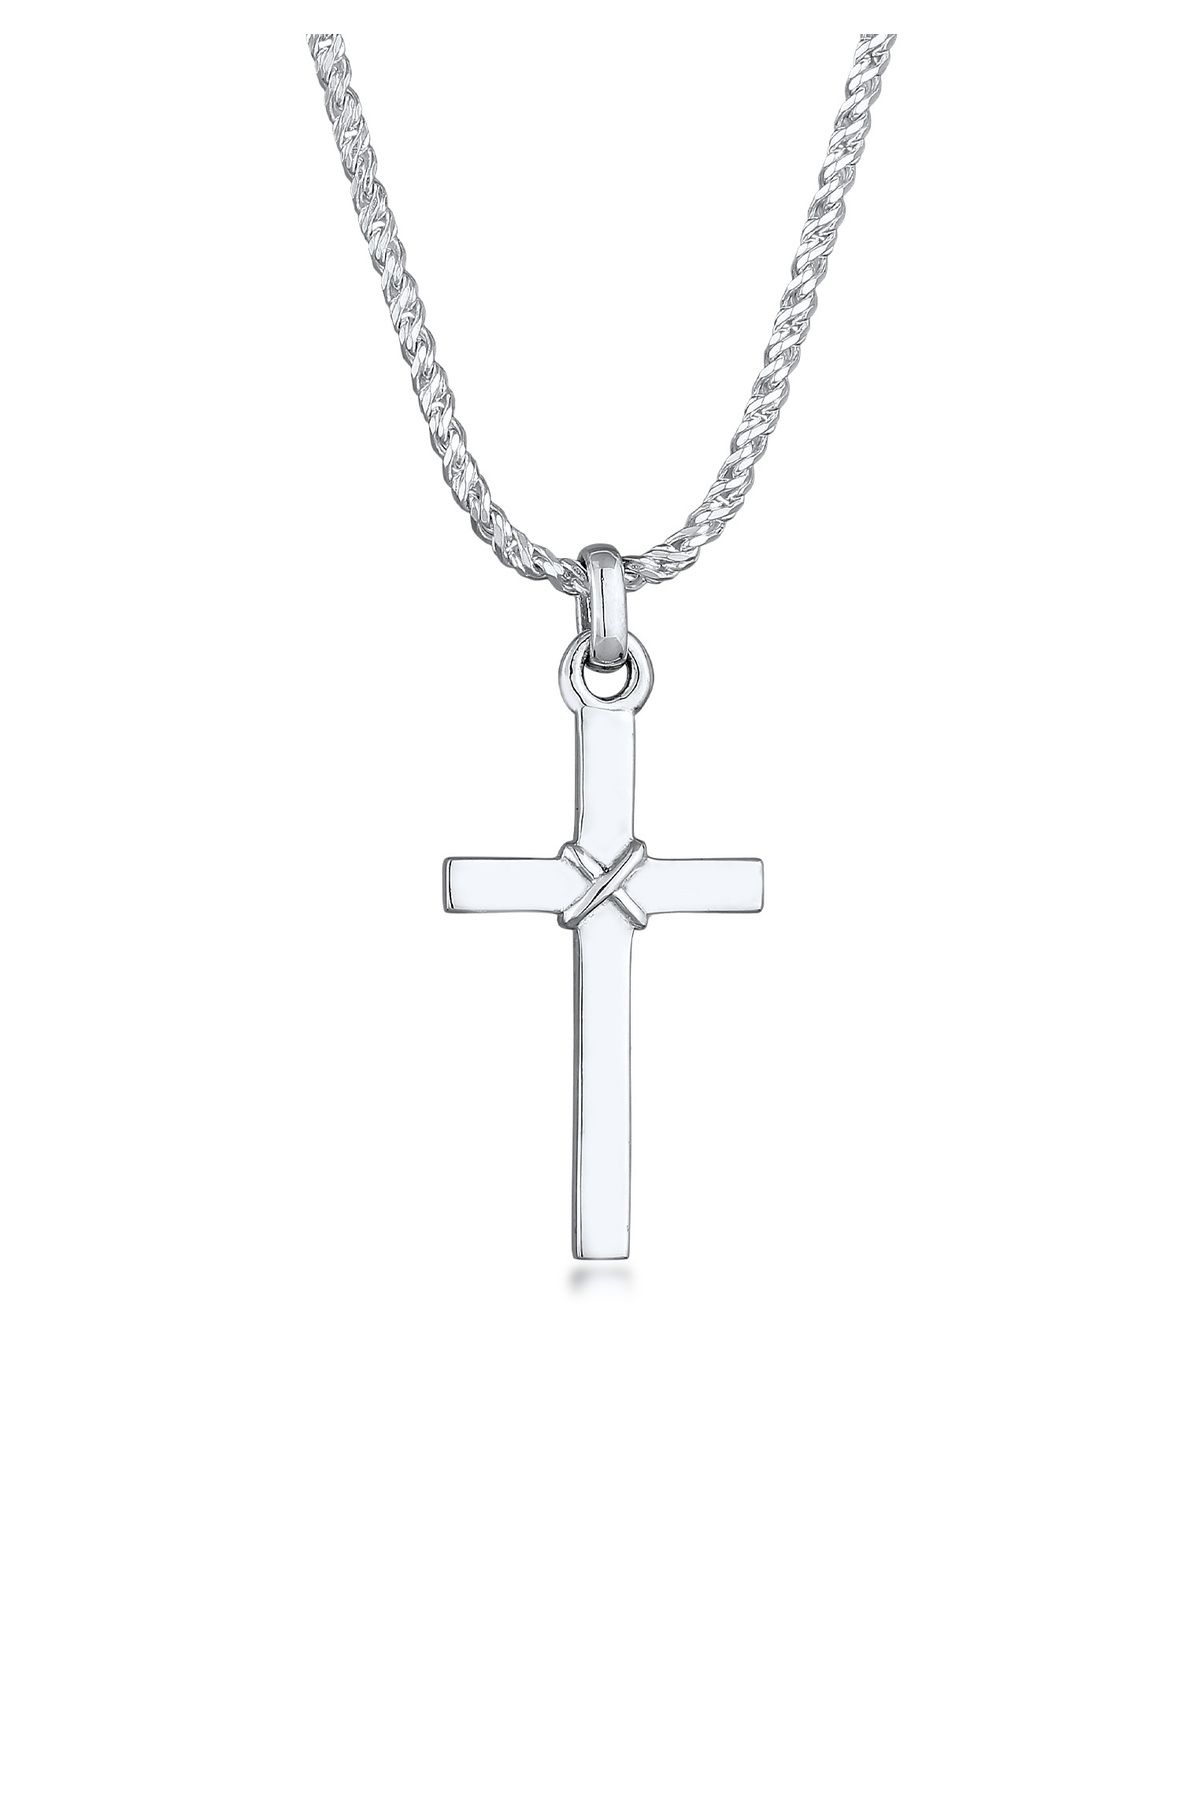 KUZZOI Halskette Flach Kordelkette Herren Silber Kreuz - Trendyol 925